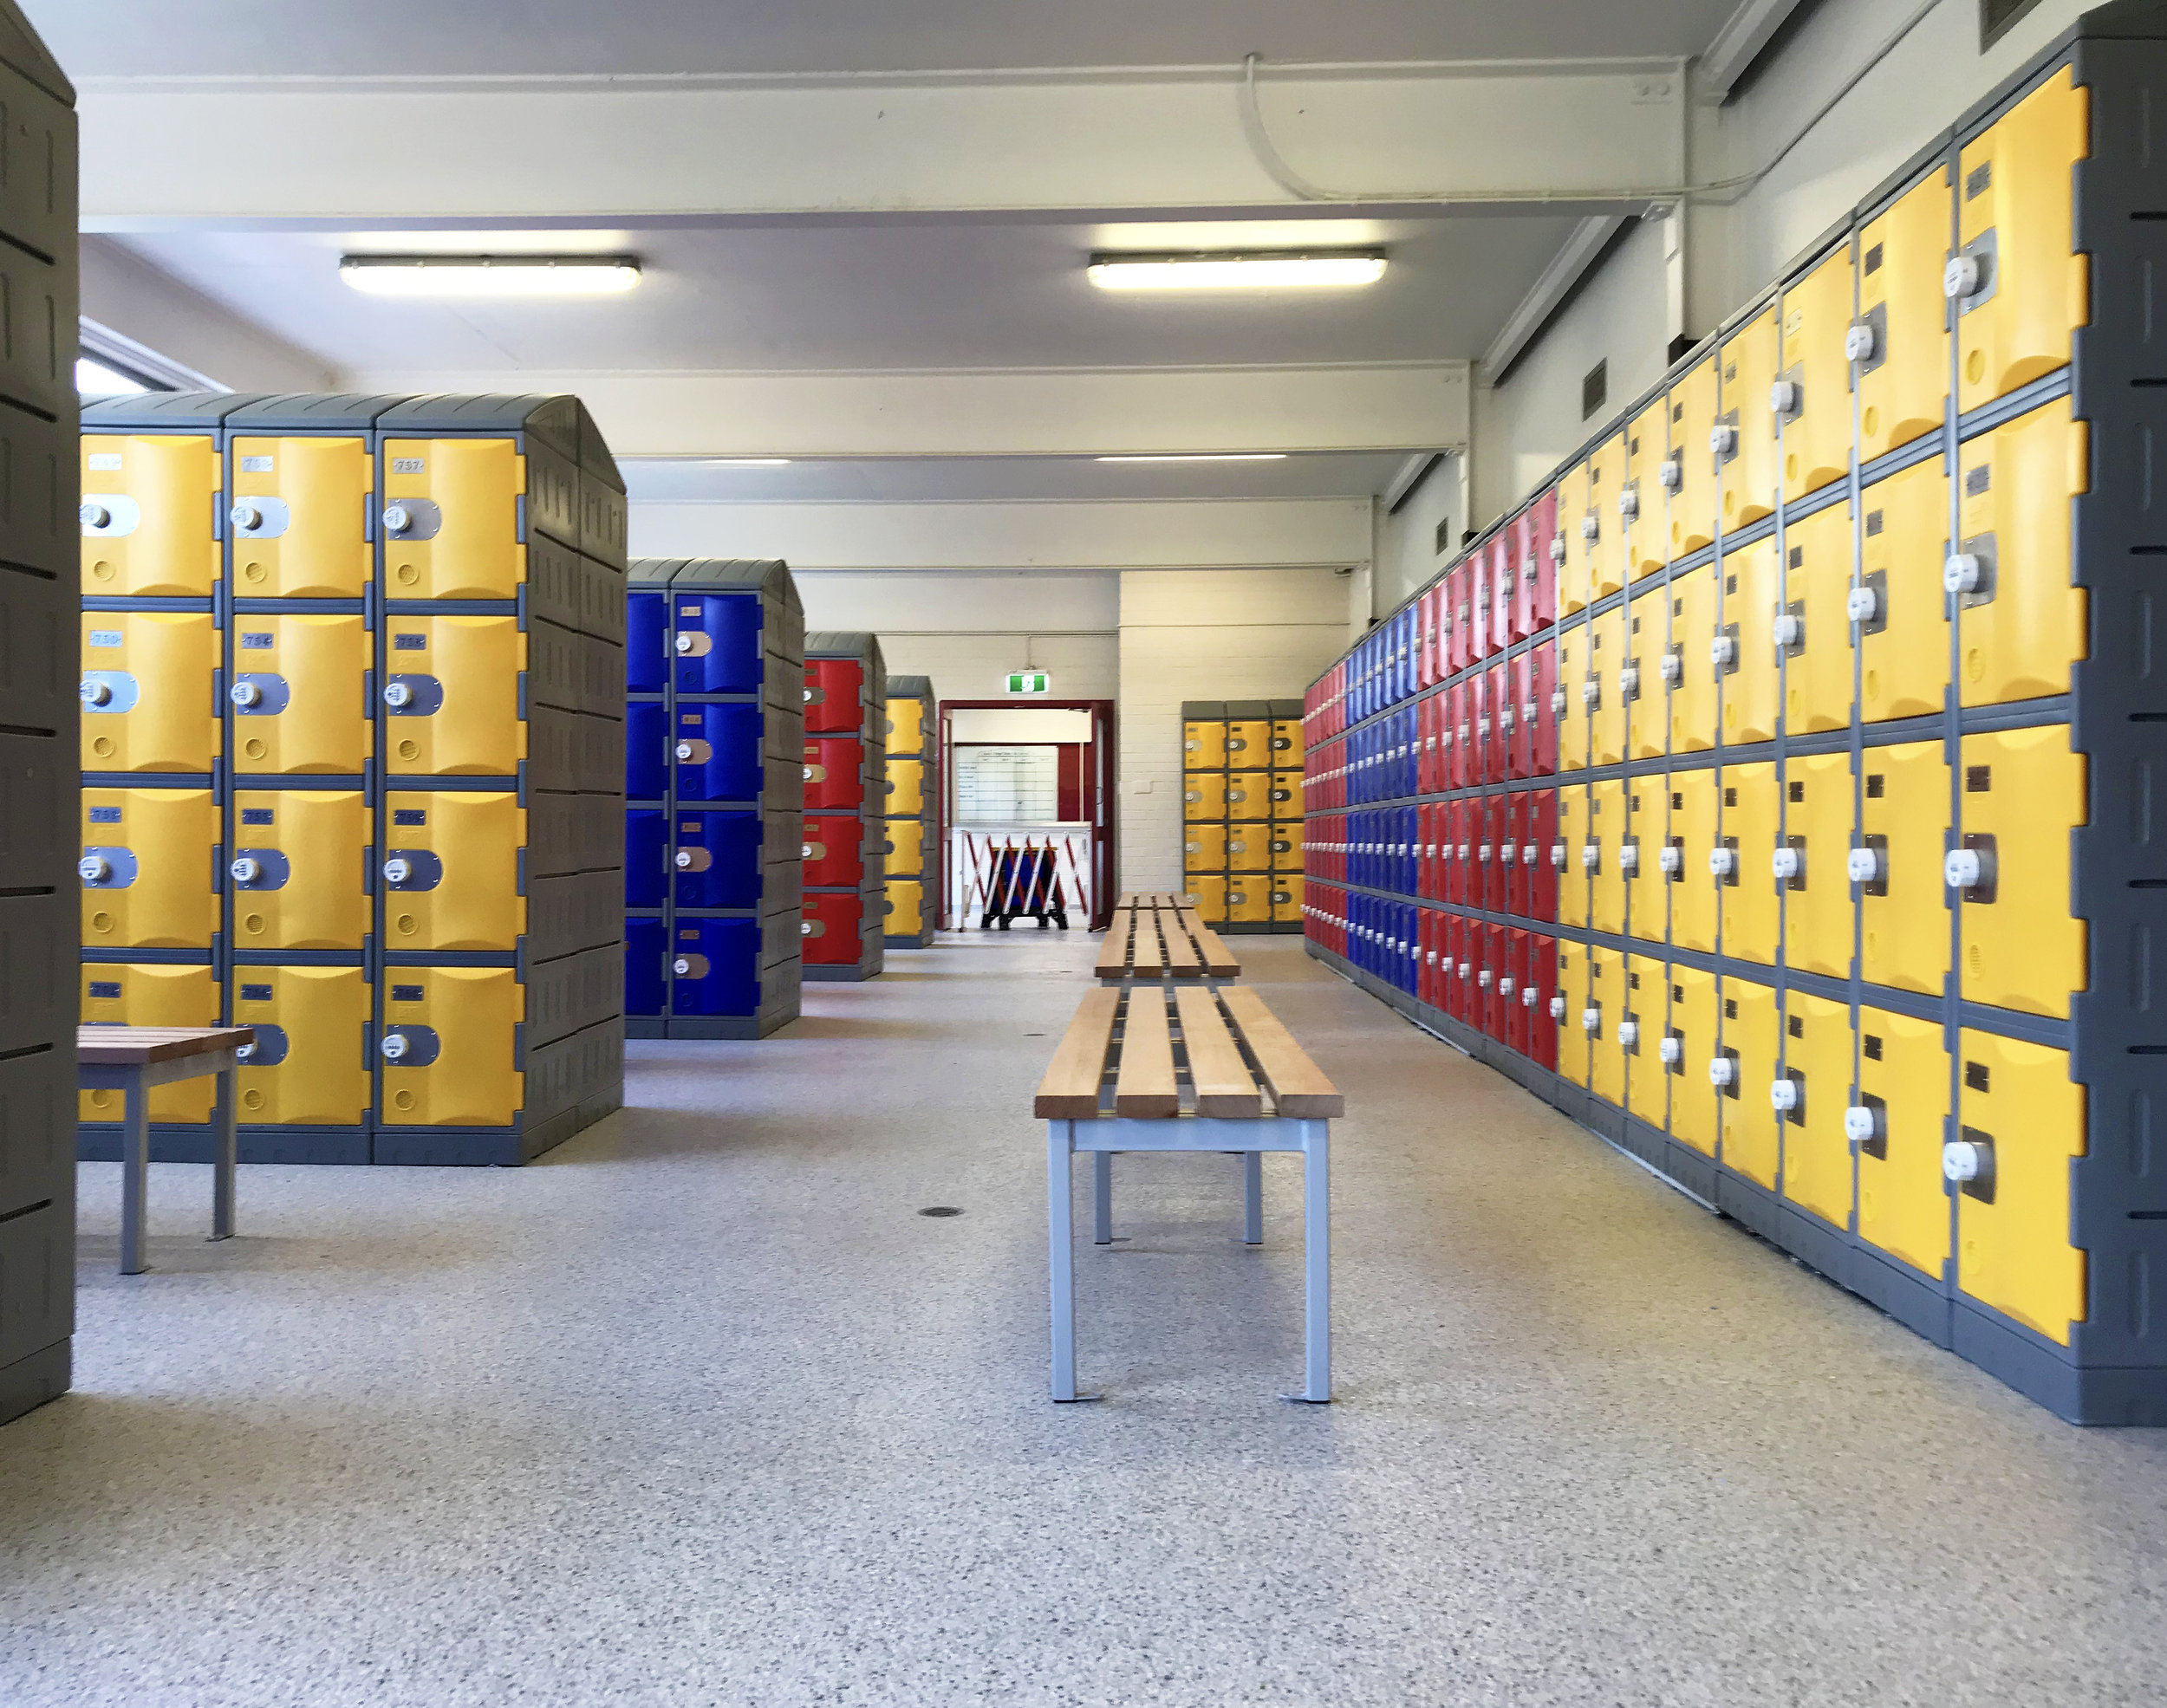 Heavy duty plastic lockers in a school change room.